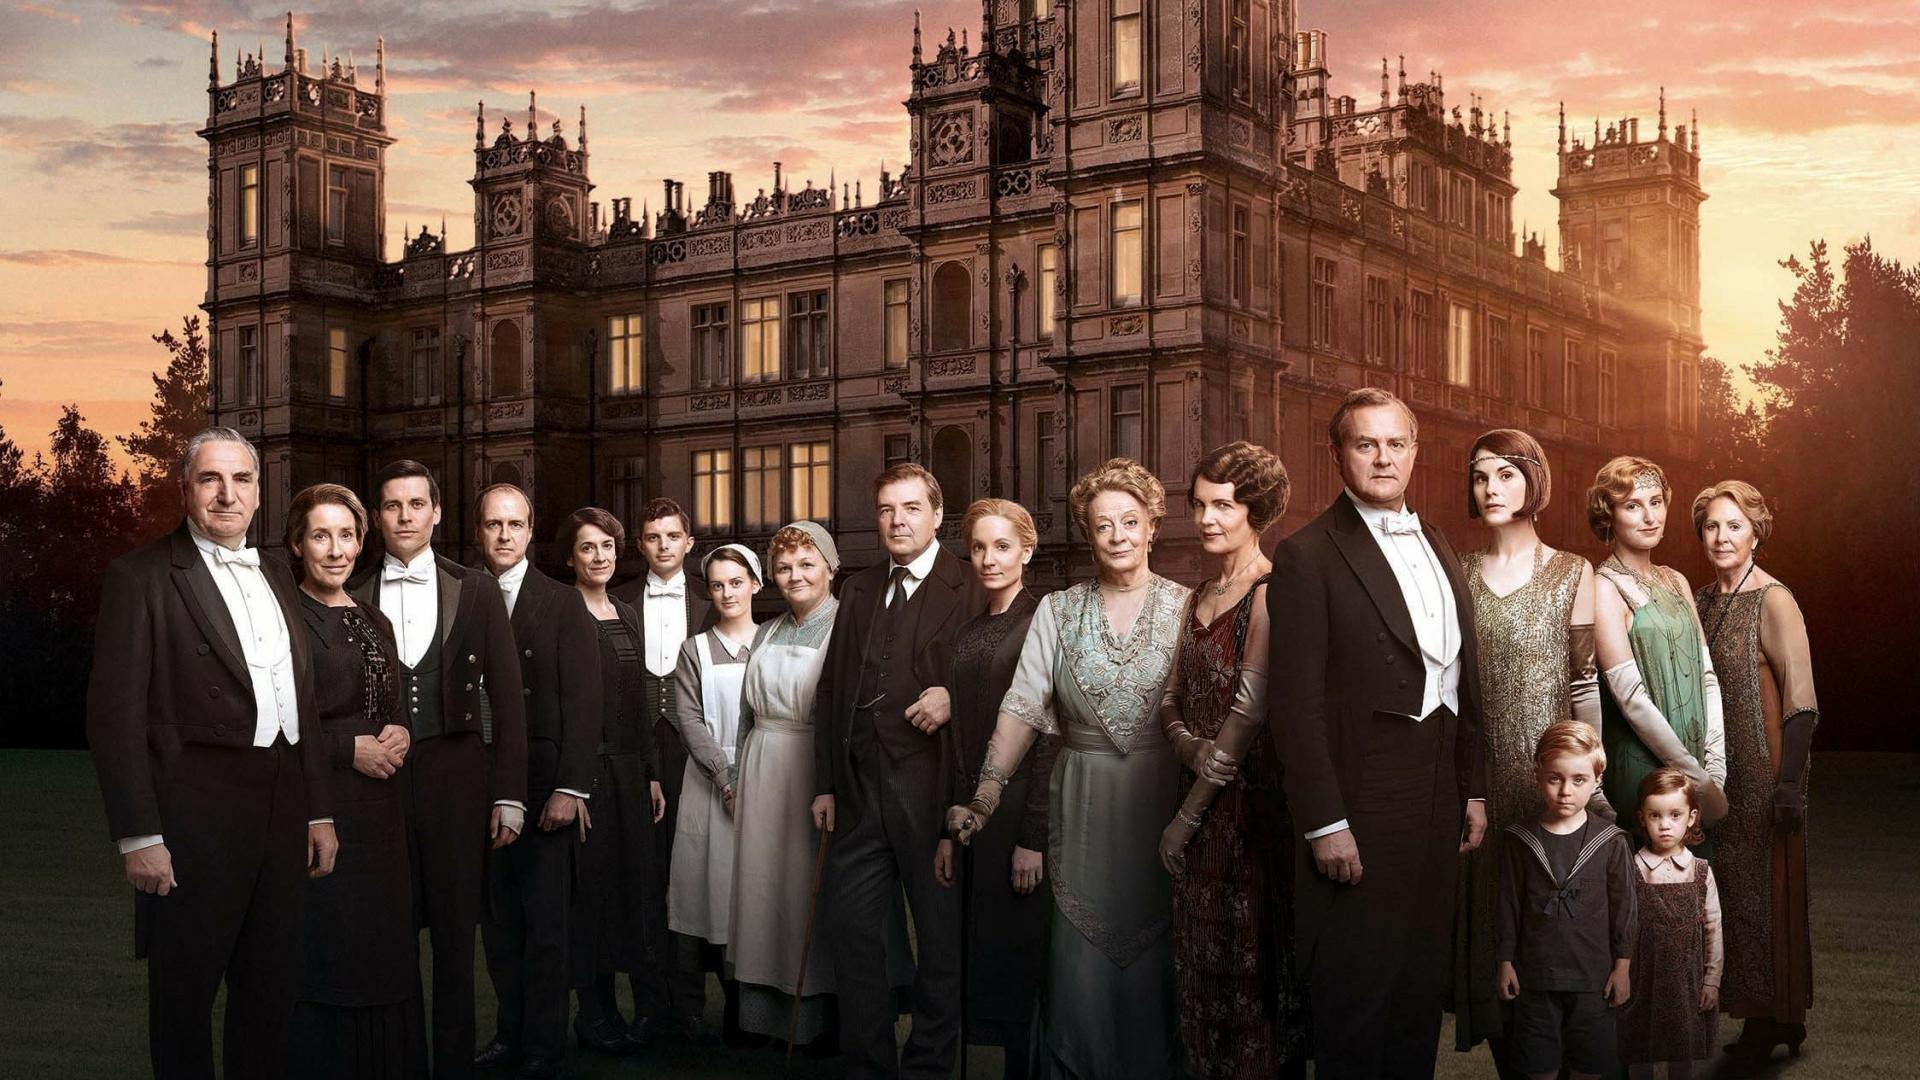 دانلود سریال Downton Abbey